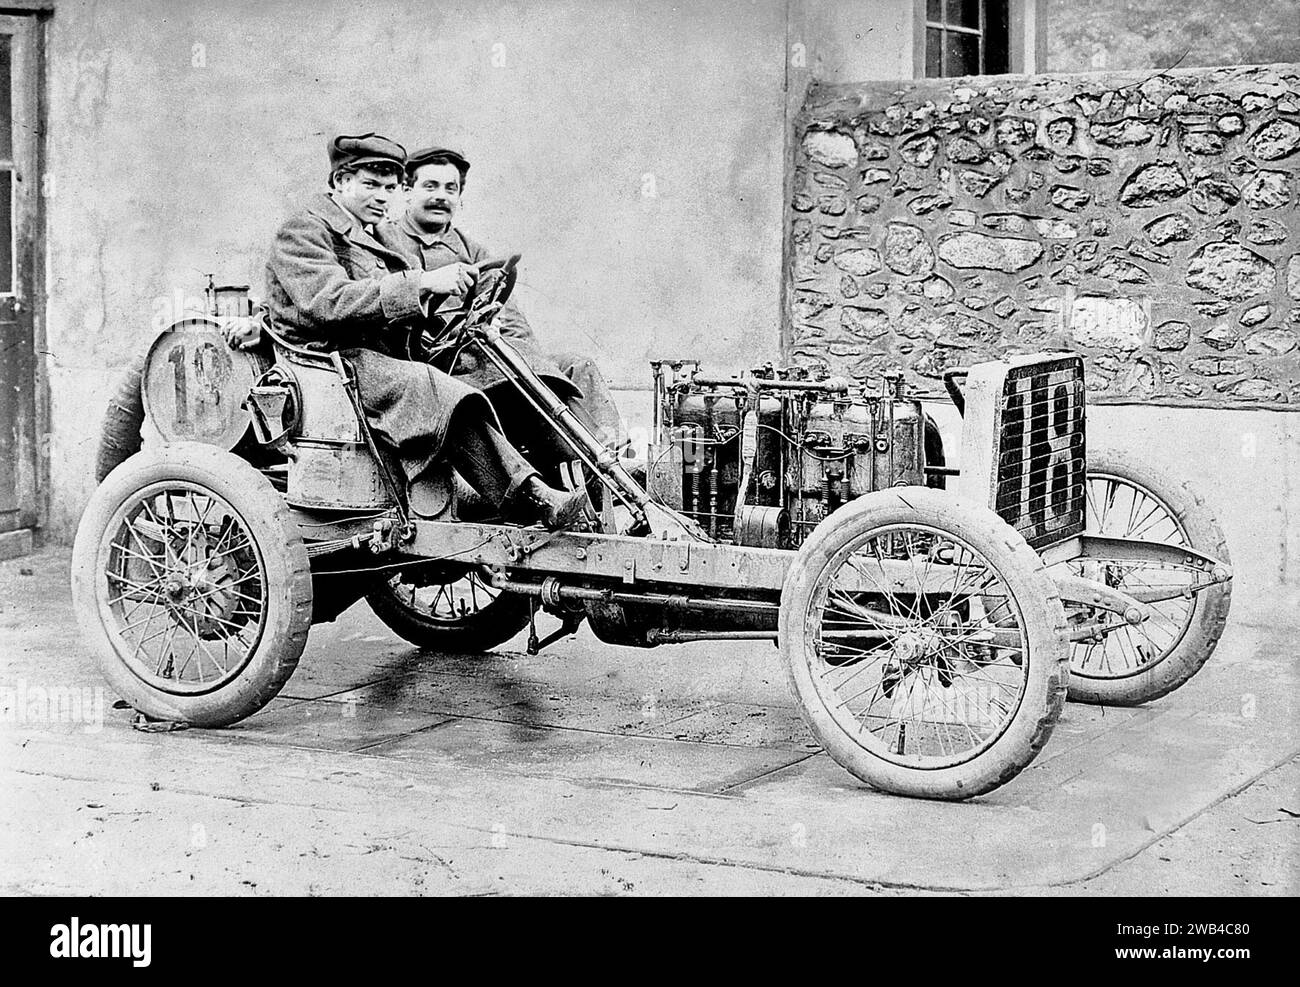 Prima edizione della 24 ore di le Mans endurance sport car race (24 heures du Mans). 26 e 27 giugno 1906. Foto di Jean de Biré credito: Photo12/Collection F. Proust Foto Stock